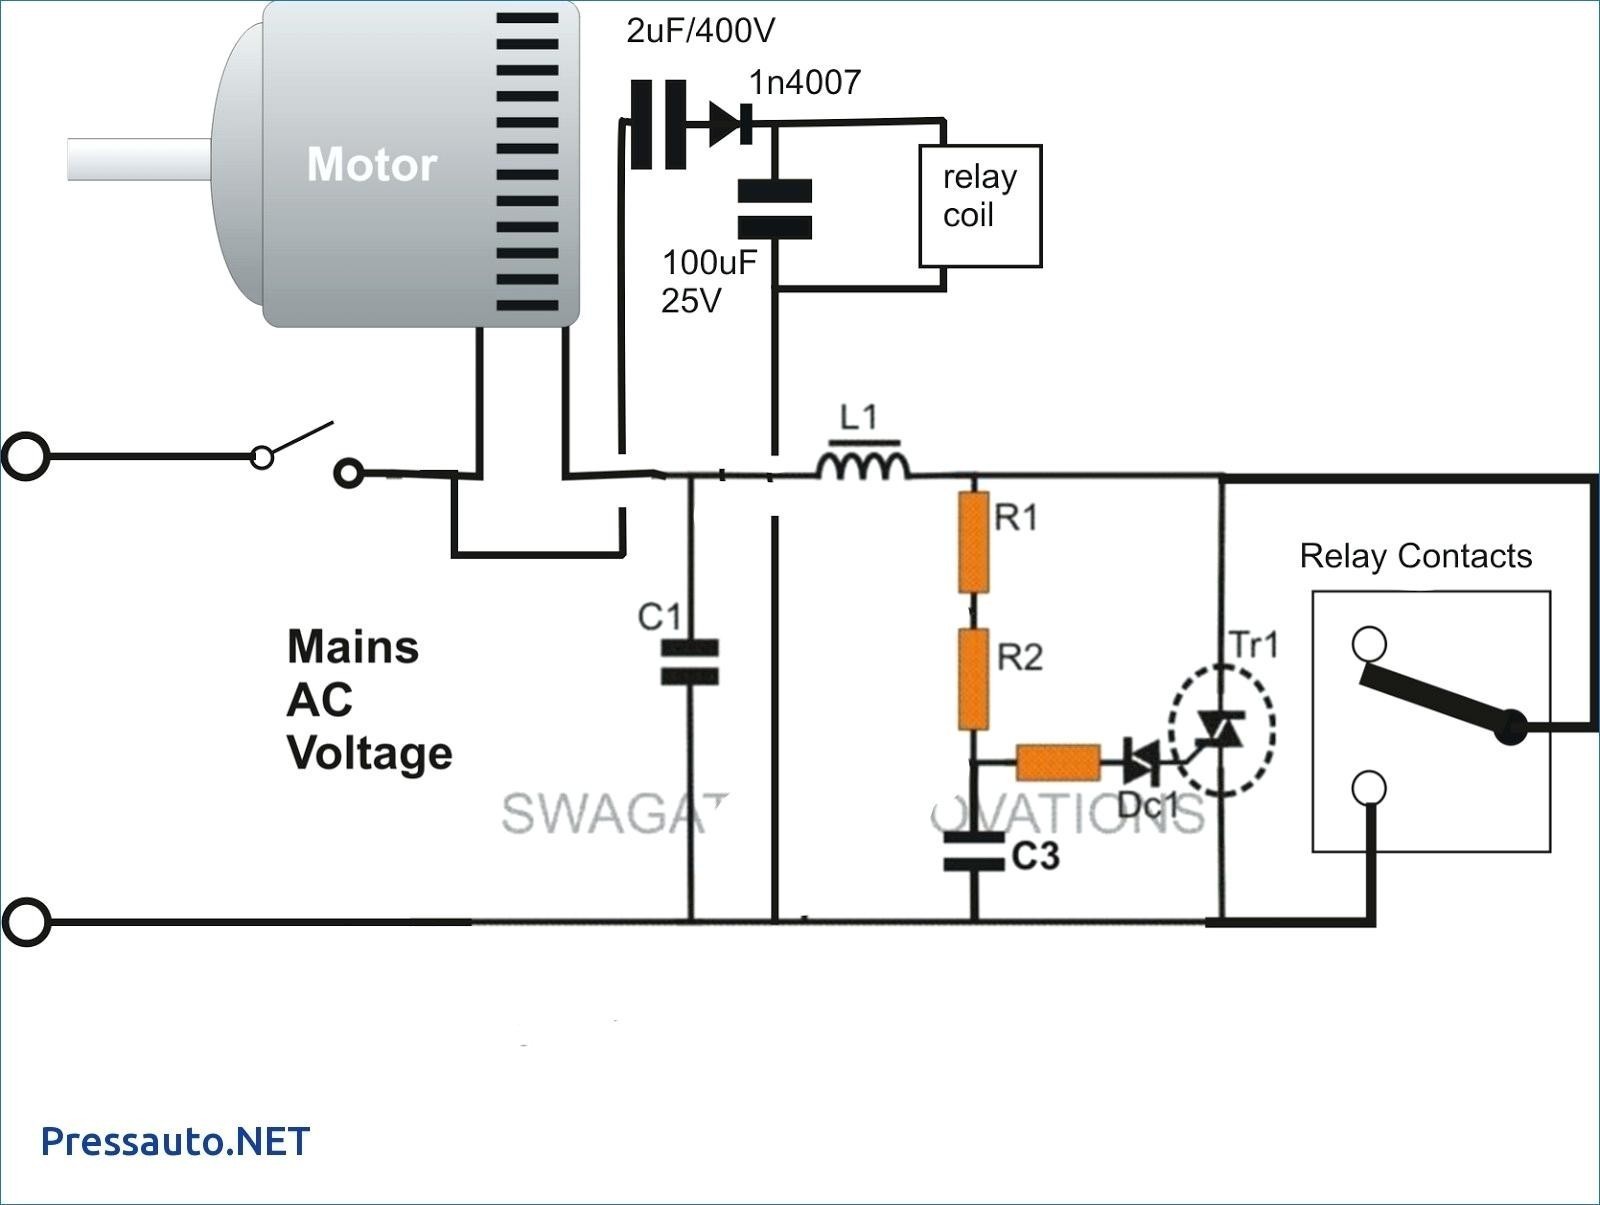 Wiring Diagram for Motor Starter Save Wiring Diagram Motor New Wiring Diagram for Magnetic Motor